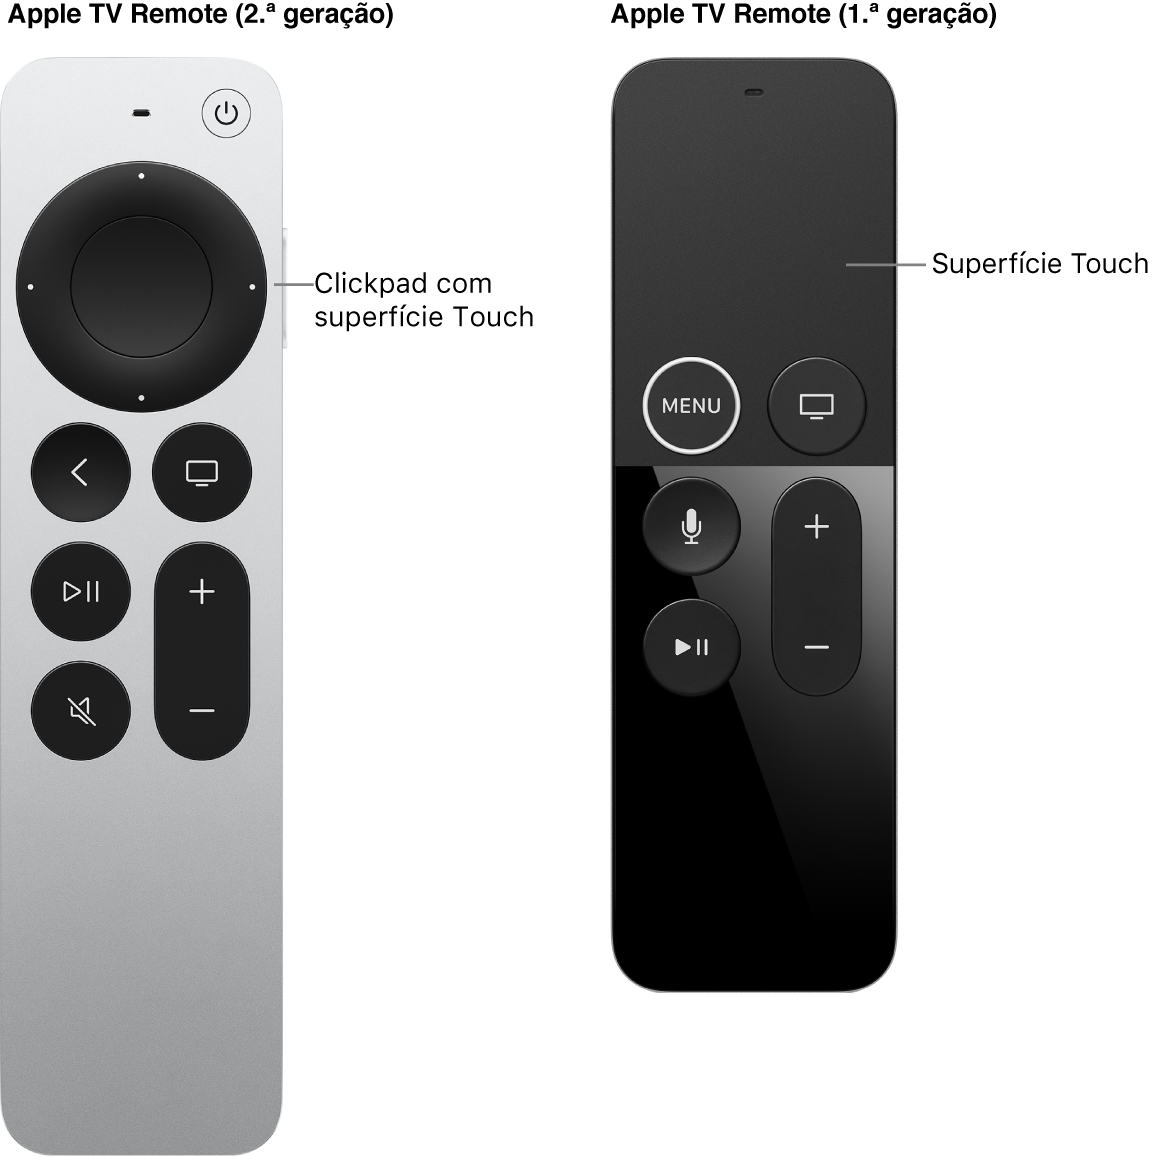 Apple TV Remote (2.ª geração) com clickpad e Apple TV Remote (1.ª geração) com superfície Touch